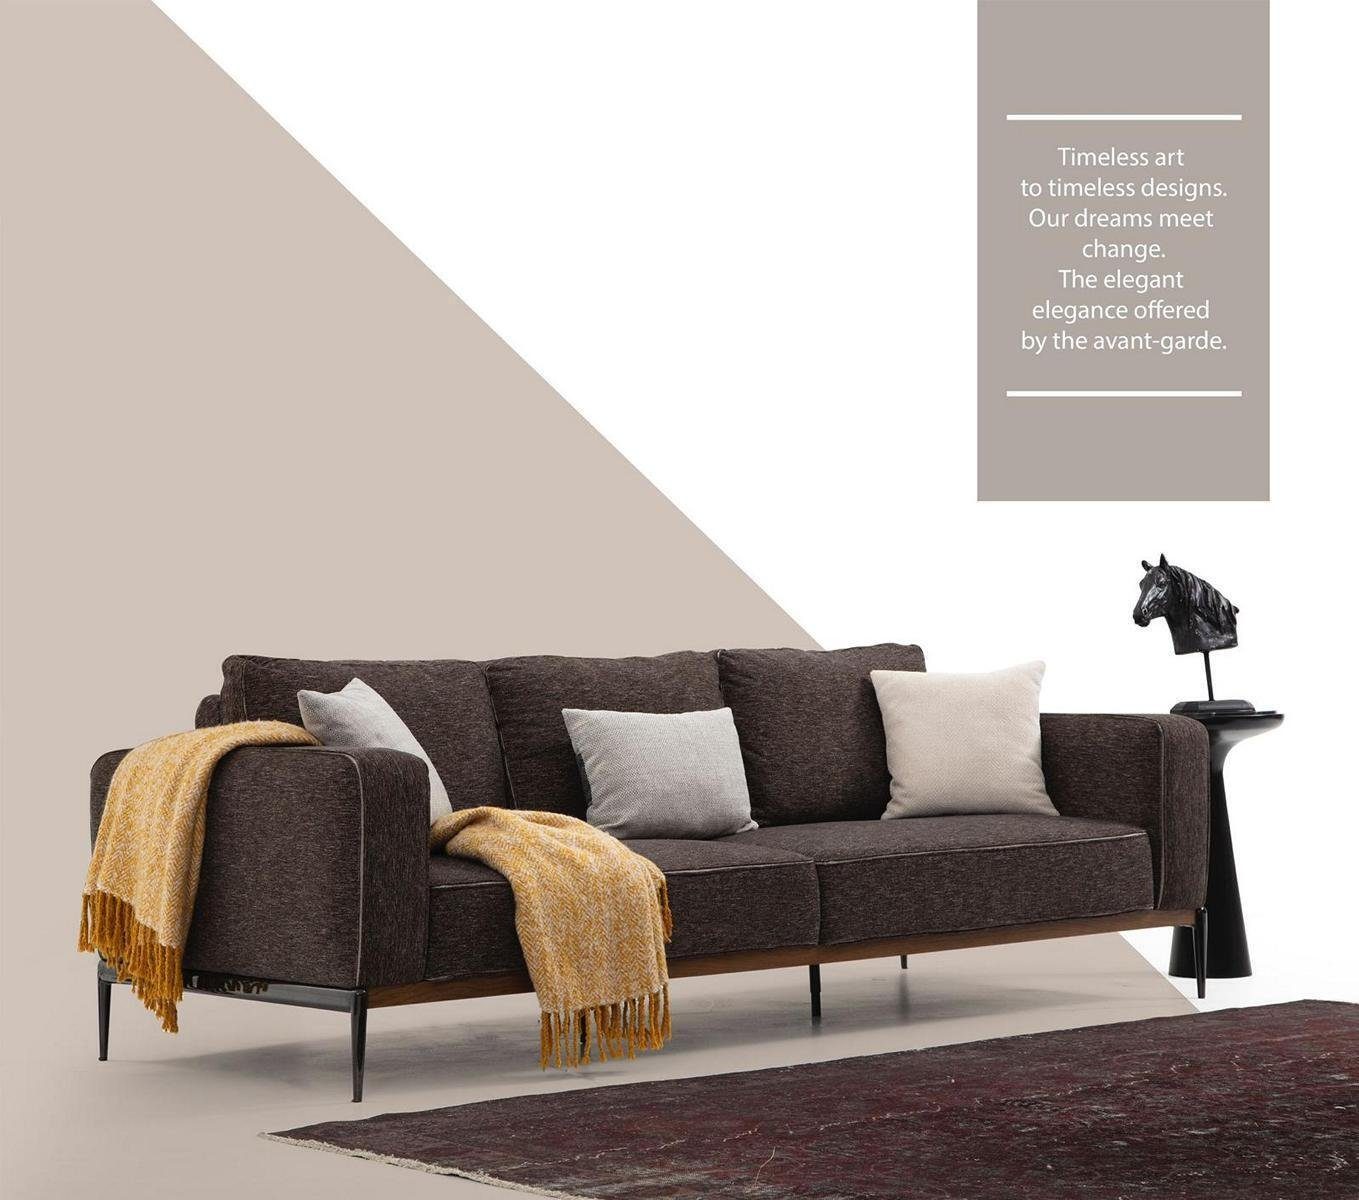 JVmoebel 2-Sitzer Zweisitzer Sofa 2 Sitzer Stoff Sofas Modern Design Wohnzimmer Grau, 1 Teile, Made in Europa